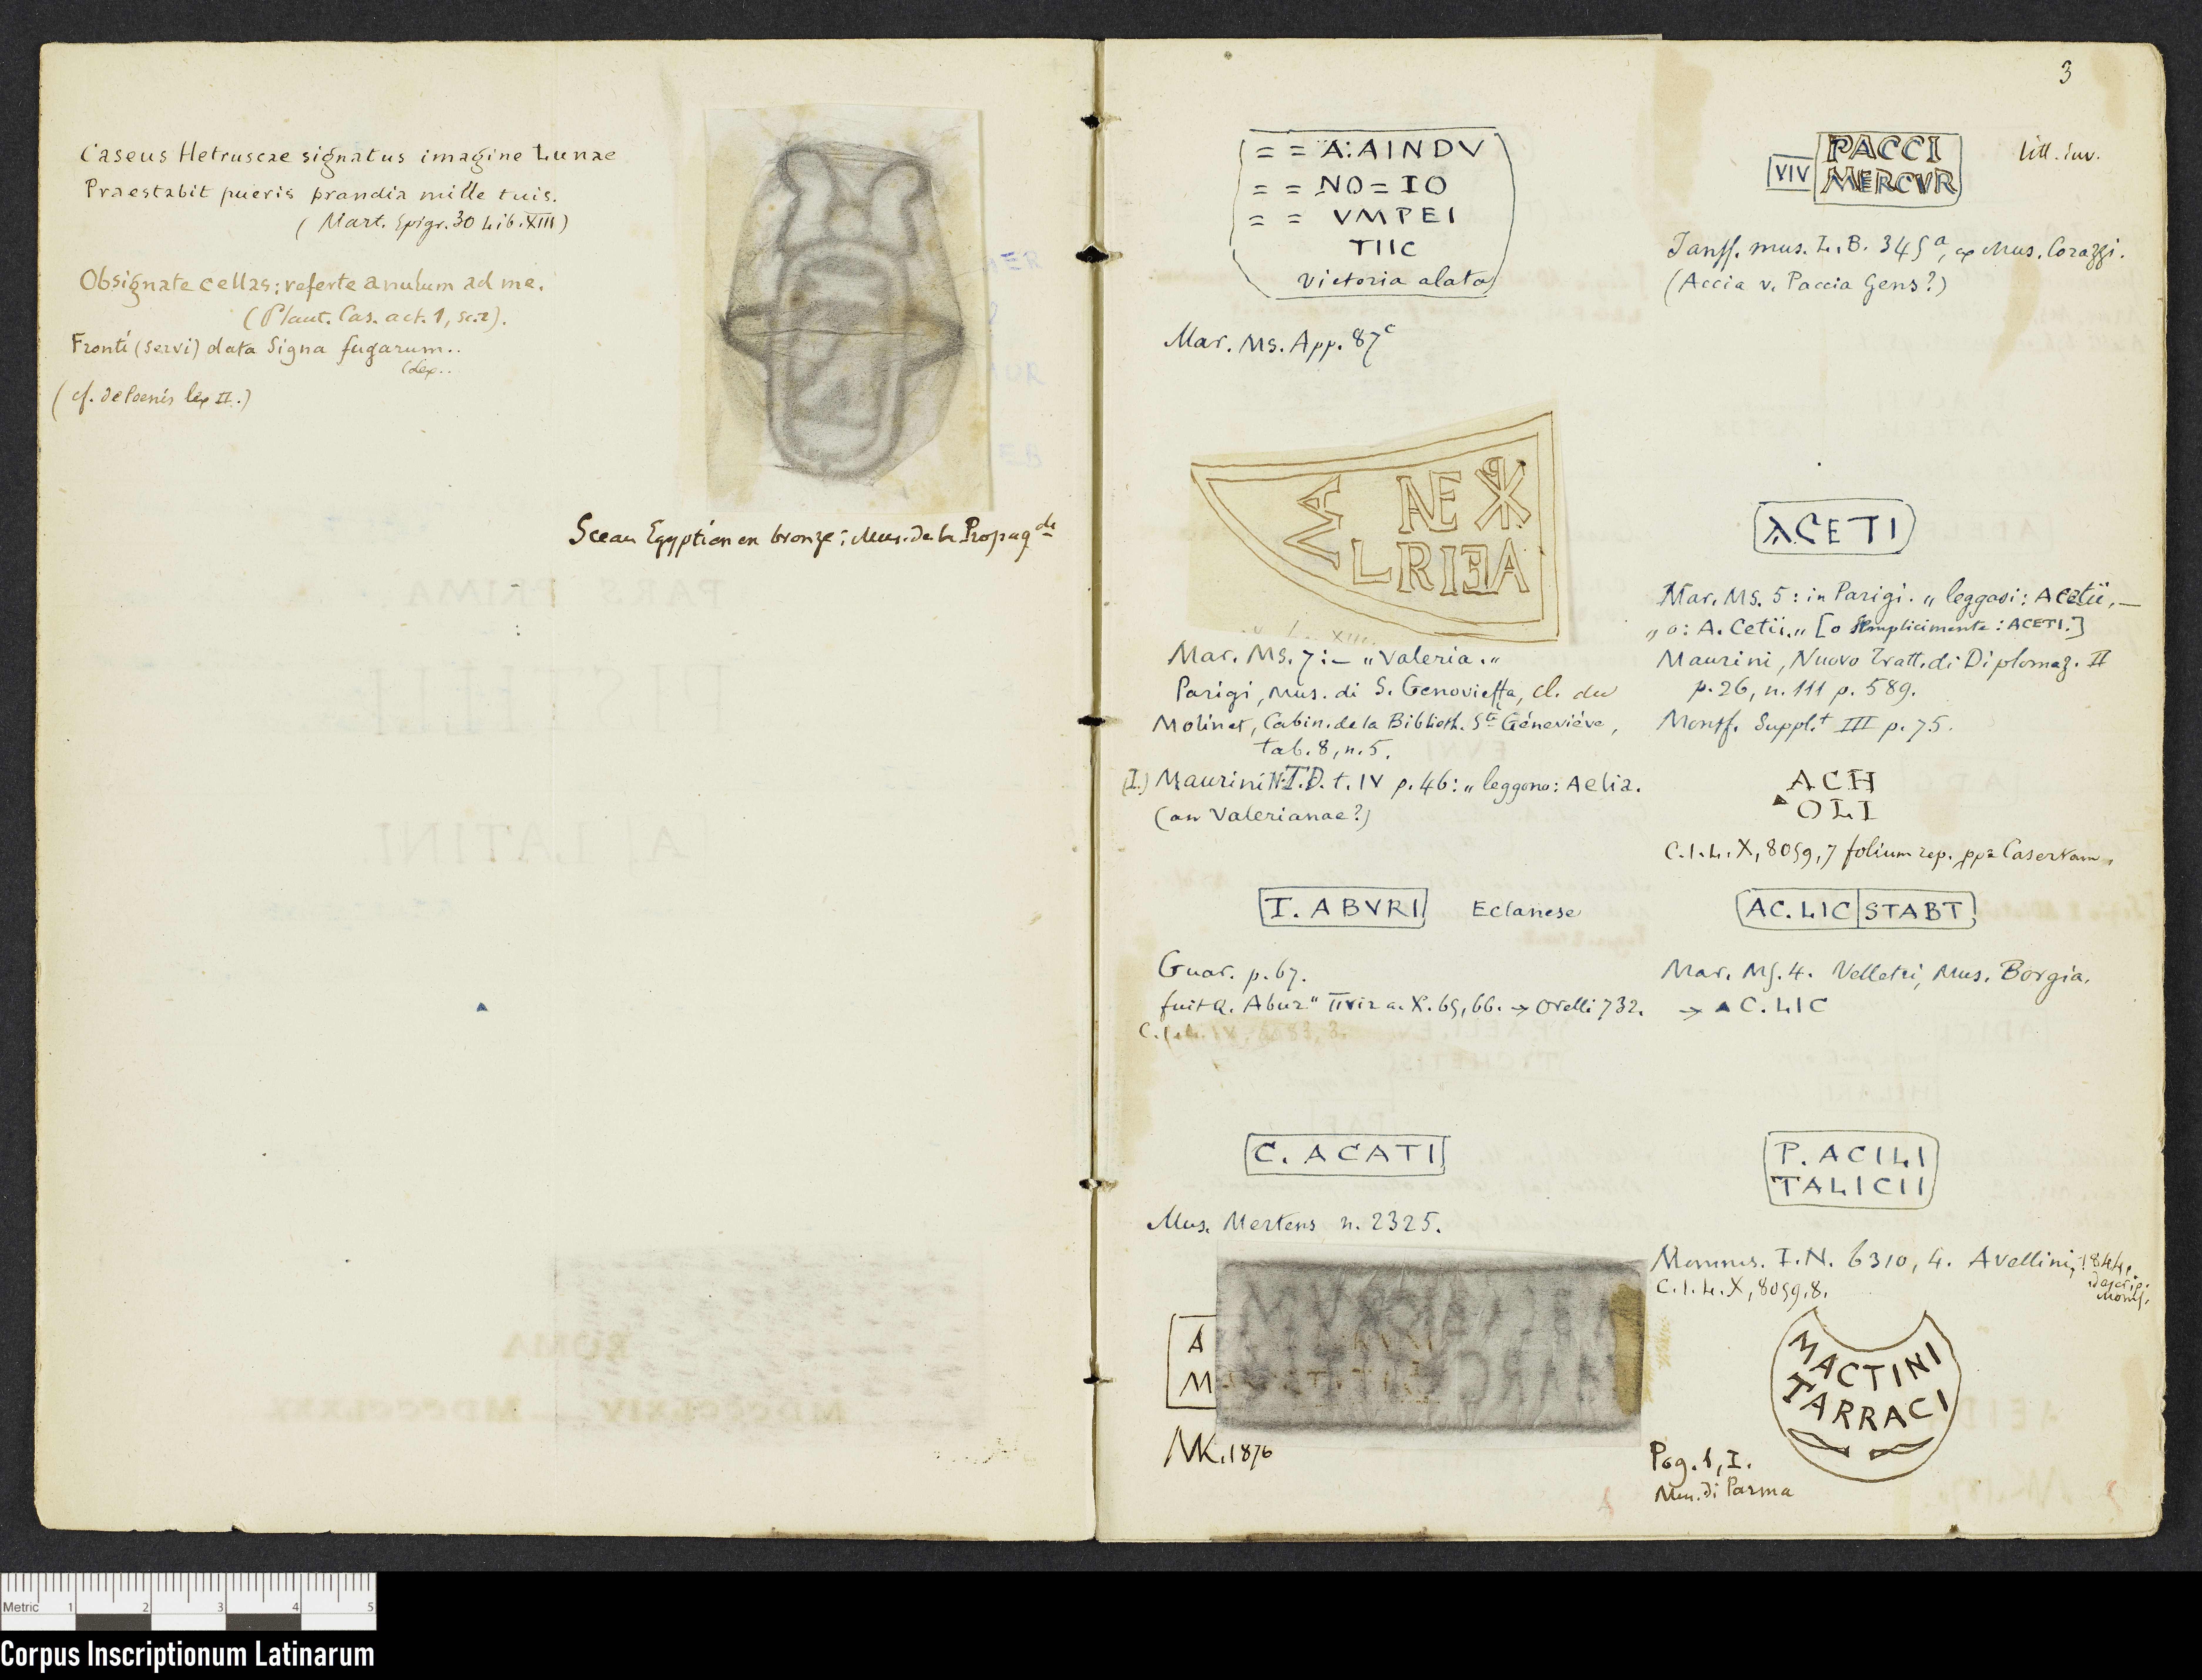 Notizbuch "Signacula" (Charles Descemet), Seiten 2 und 3 (Corpus Inscriptionum Latinarum (CIL), Berlin-Brandenburgische Akademie der Wissenschaften (BBAW) Public Domain Mark)